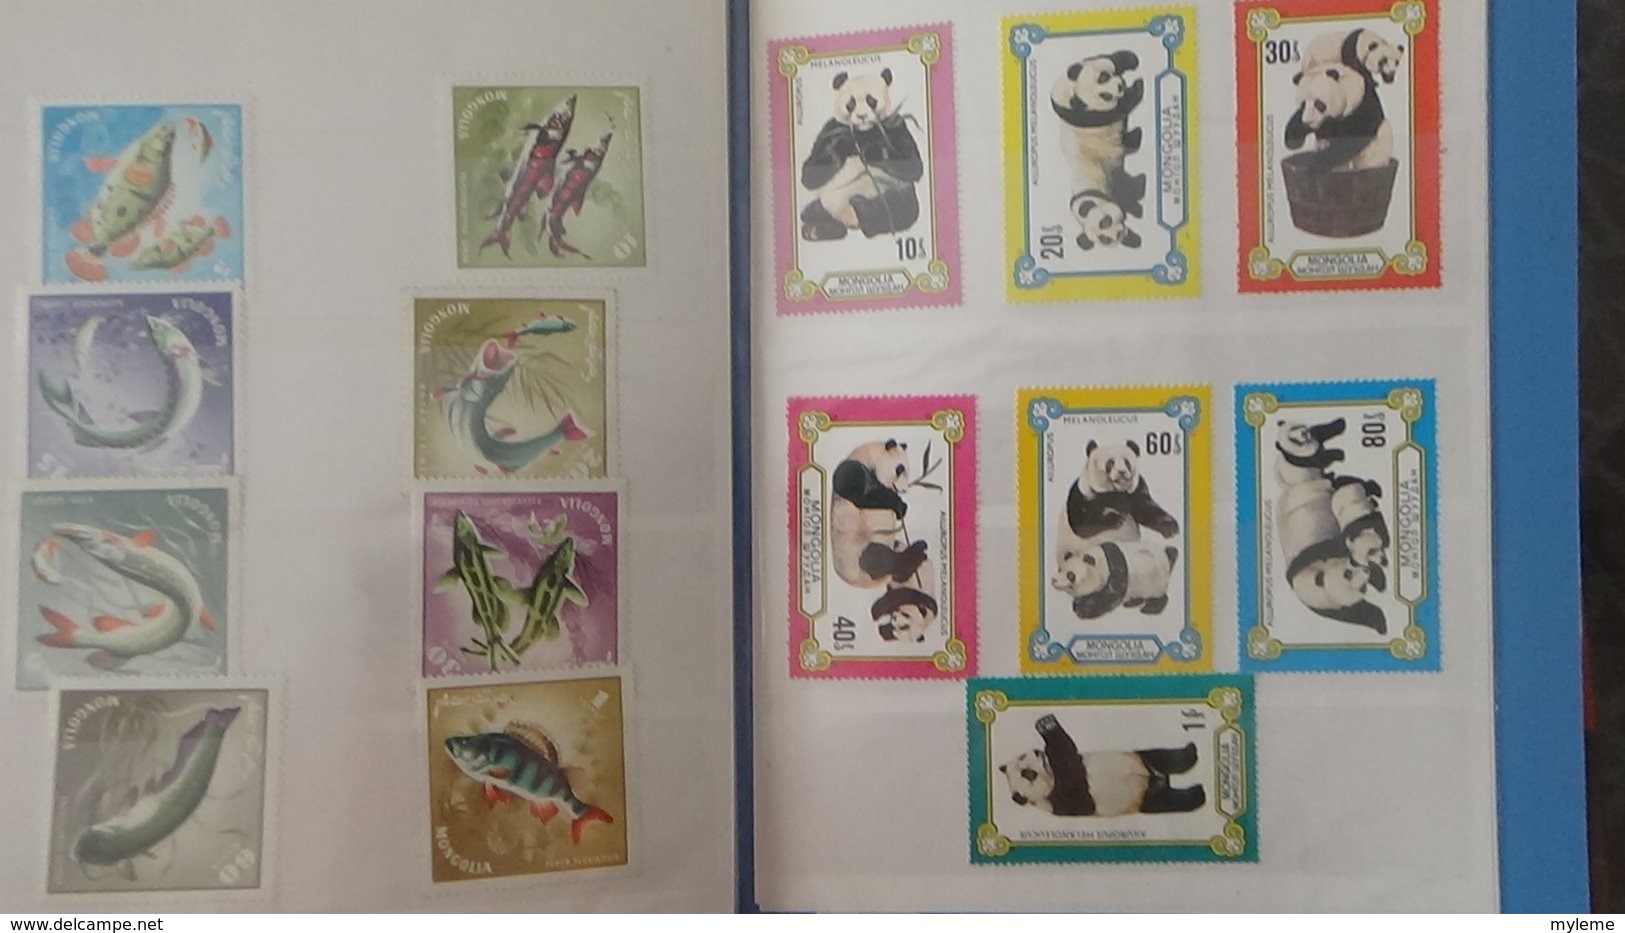 Petite collection de MONGOLIE en timbres et blocs ** dans 3 carnets . A saisir !!!